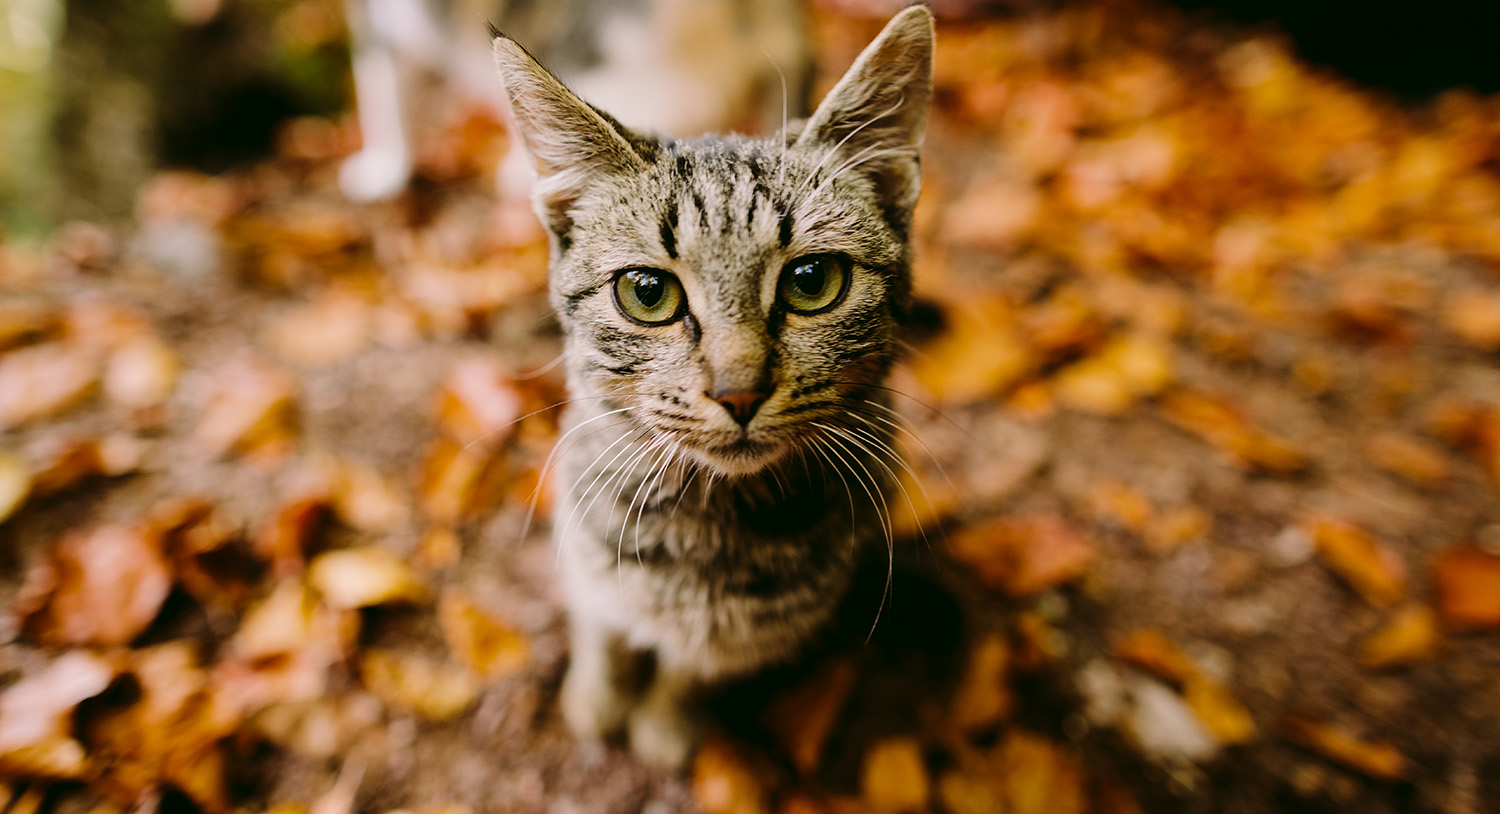 jesień-liście-żółto-ciekawy-kot-obserwuje-pozuje-zdjęcie